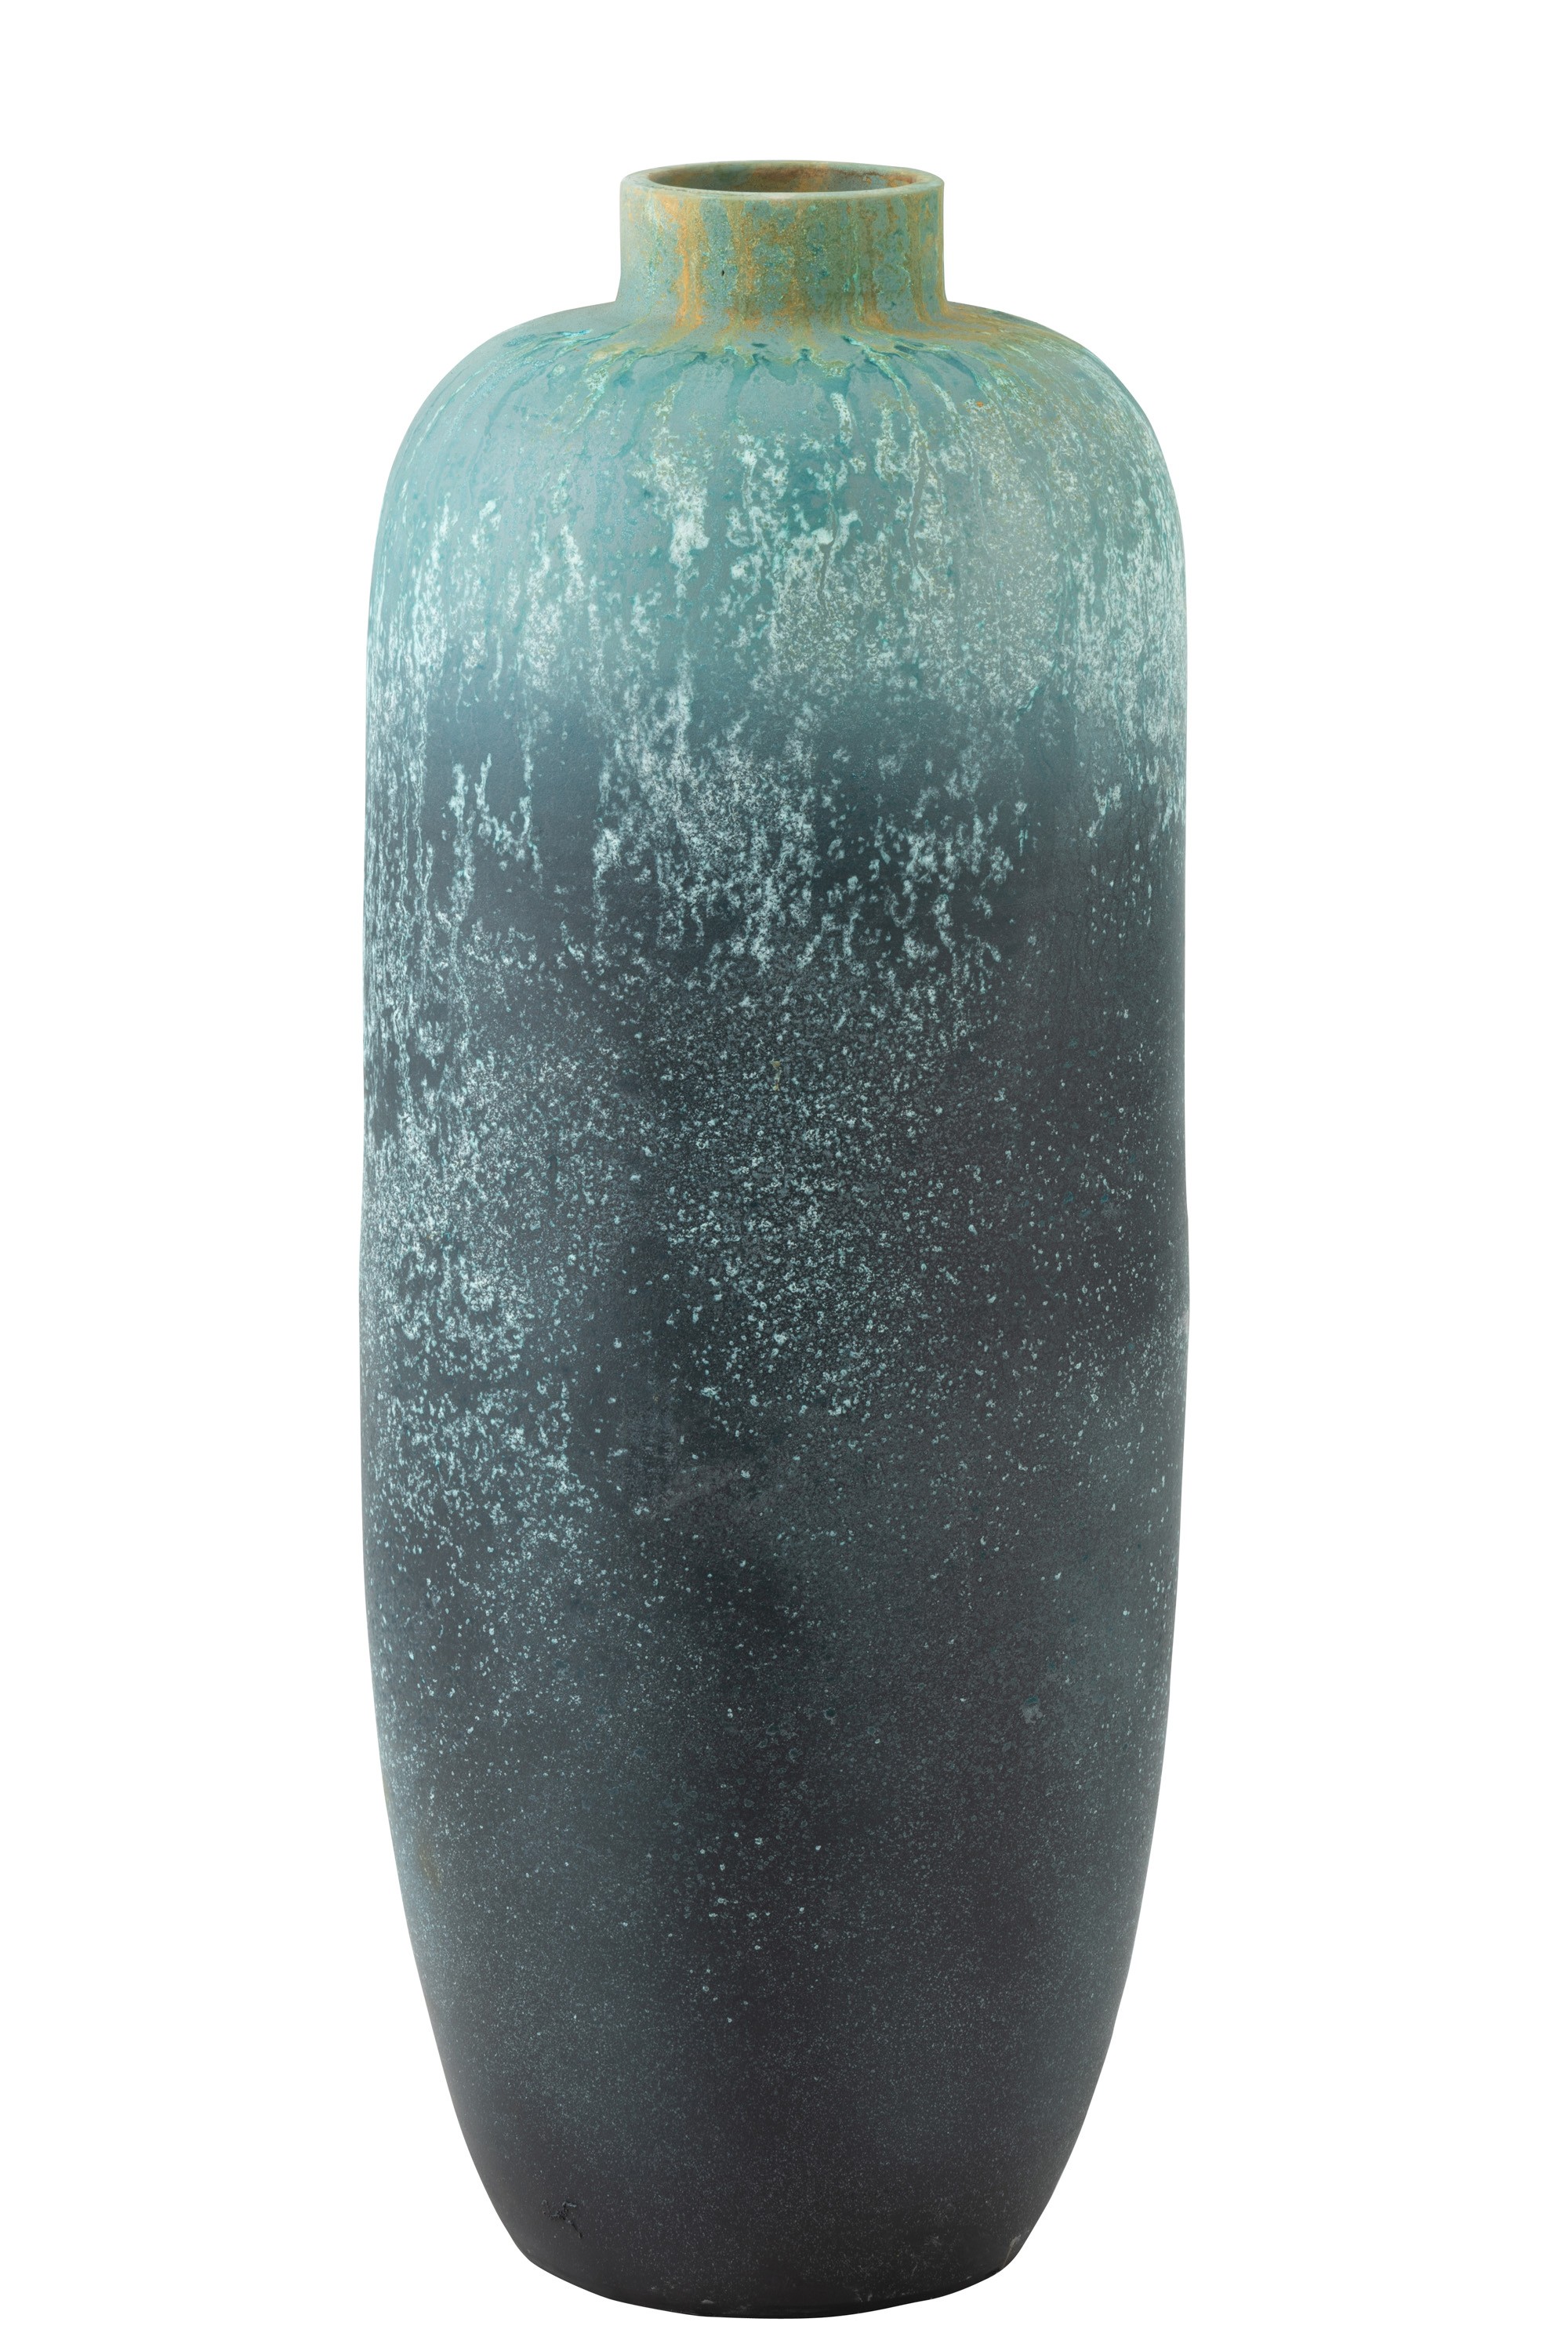 Azurová keramická dekorační váza Vintage - Ø 35*93cm J-Line by Jolipa